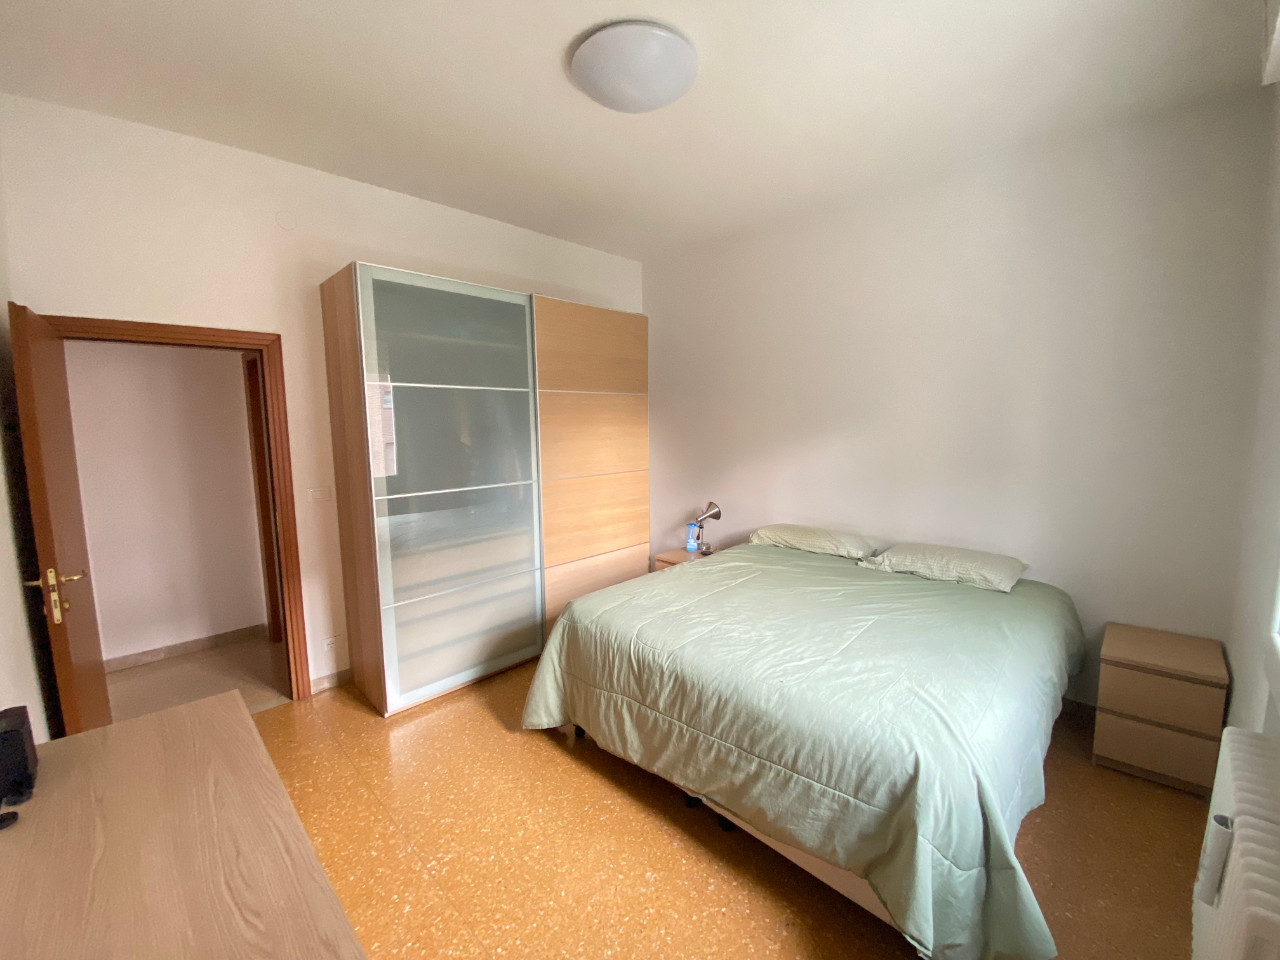 Appartamento in affitto a Casalecchio di Reno, 2 locali, zona Zona: Meridiana, prezzo € 900 | CambioCasa.it